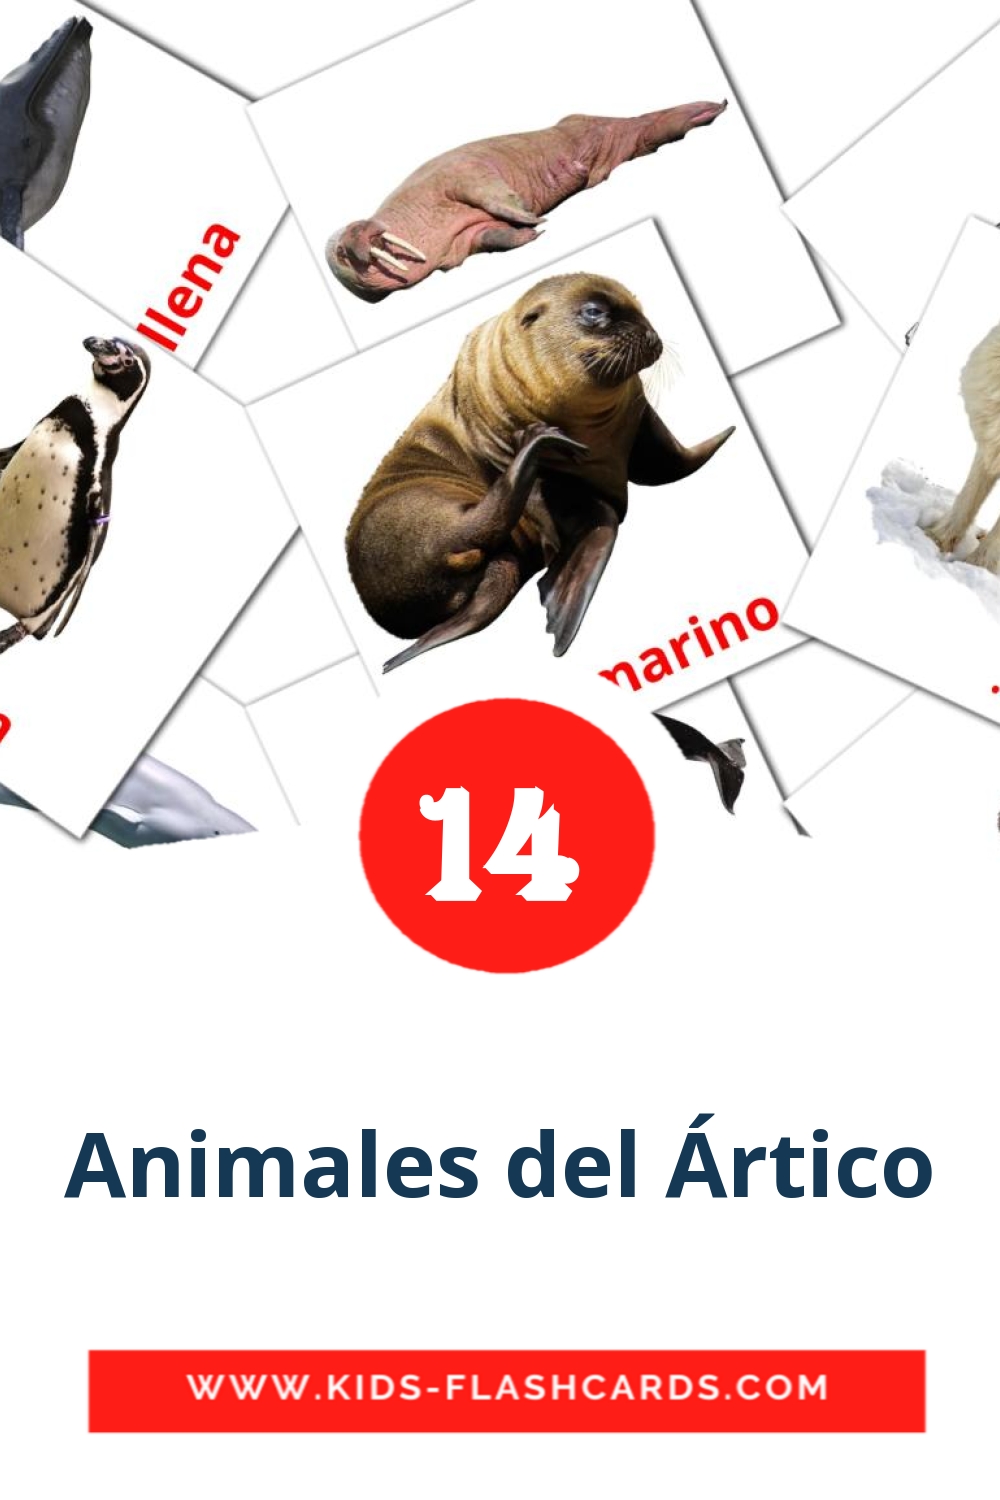 14 carte illustrate di Animales del Ártico per la scuola materna in amárica